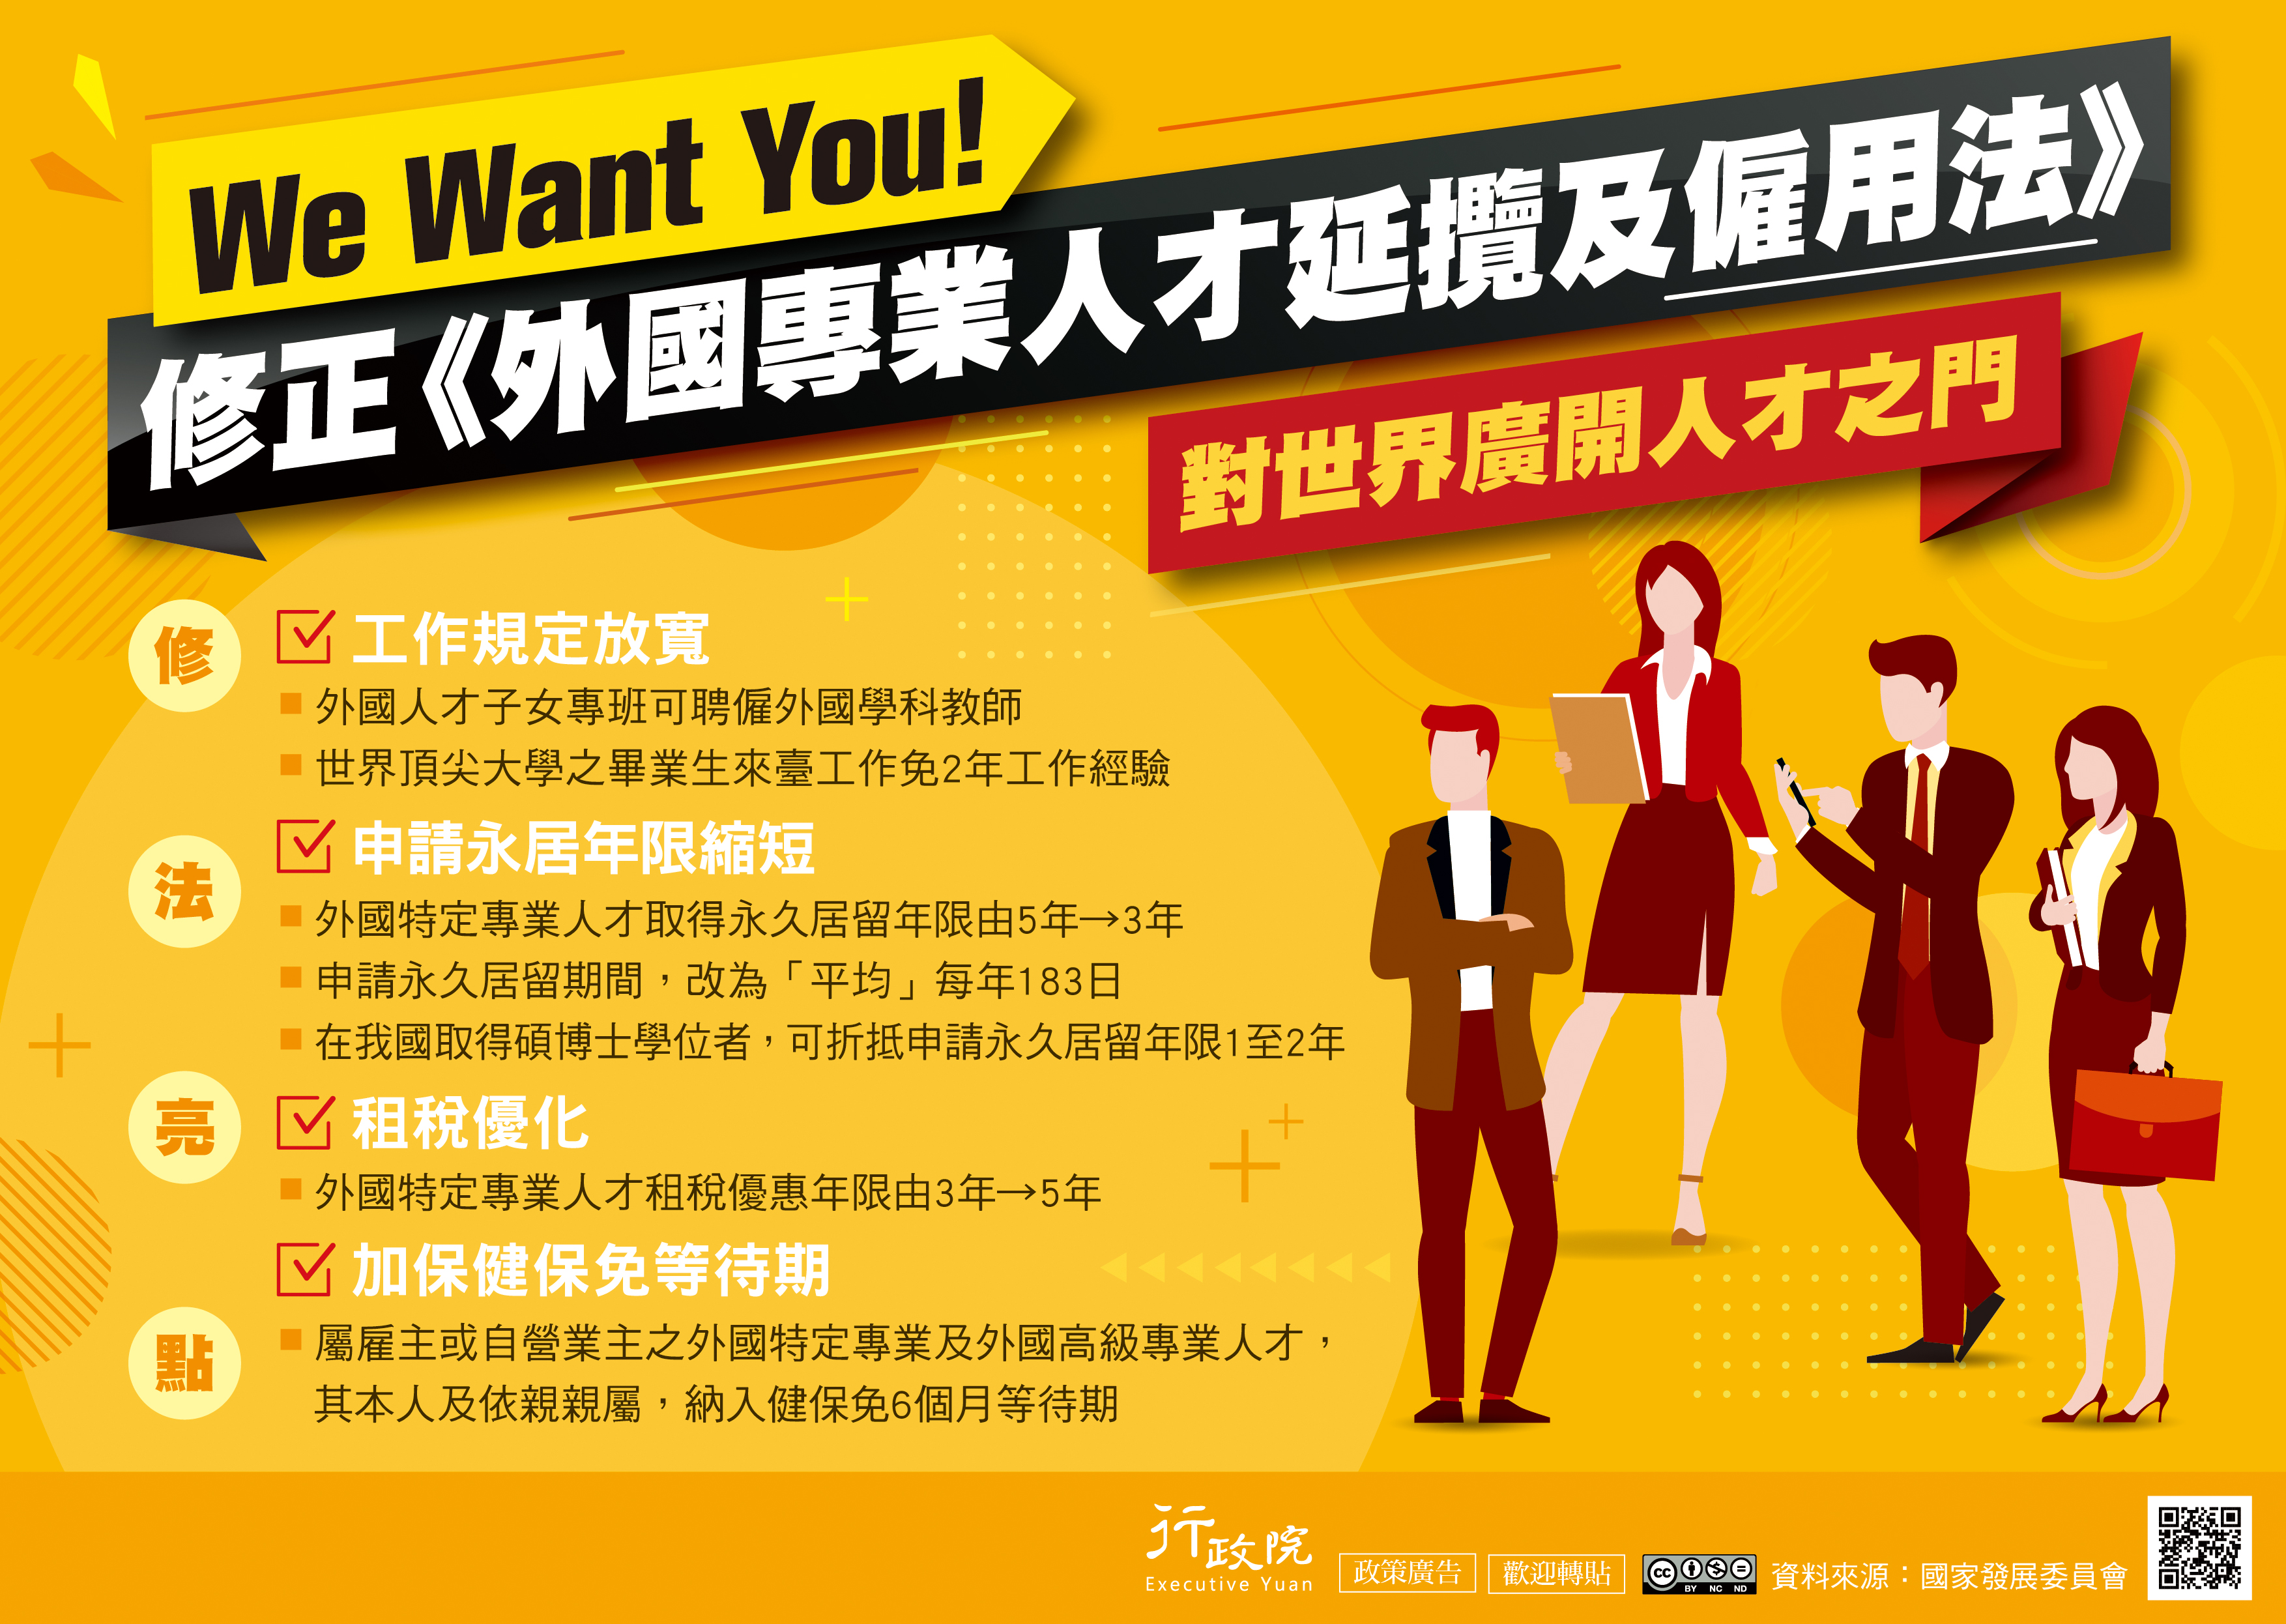 Ủy ban Phát triển quốc gia đưa ra 4 ưu đãi nhằm thu hút nhân tài nước ngoài đến Đài Loan làm việc. (Nguồn ảnh: Ủy ban Phát triển quốc gia) 